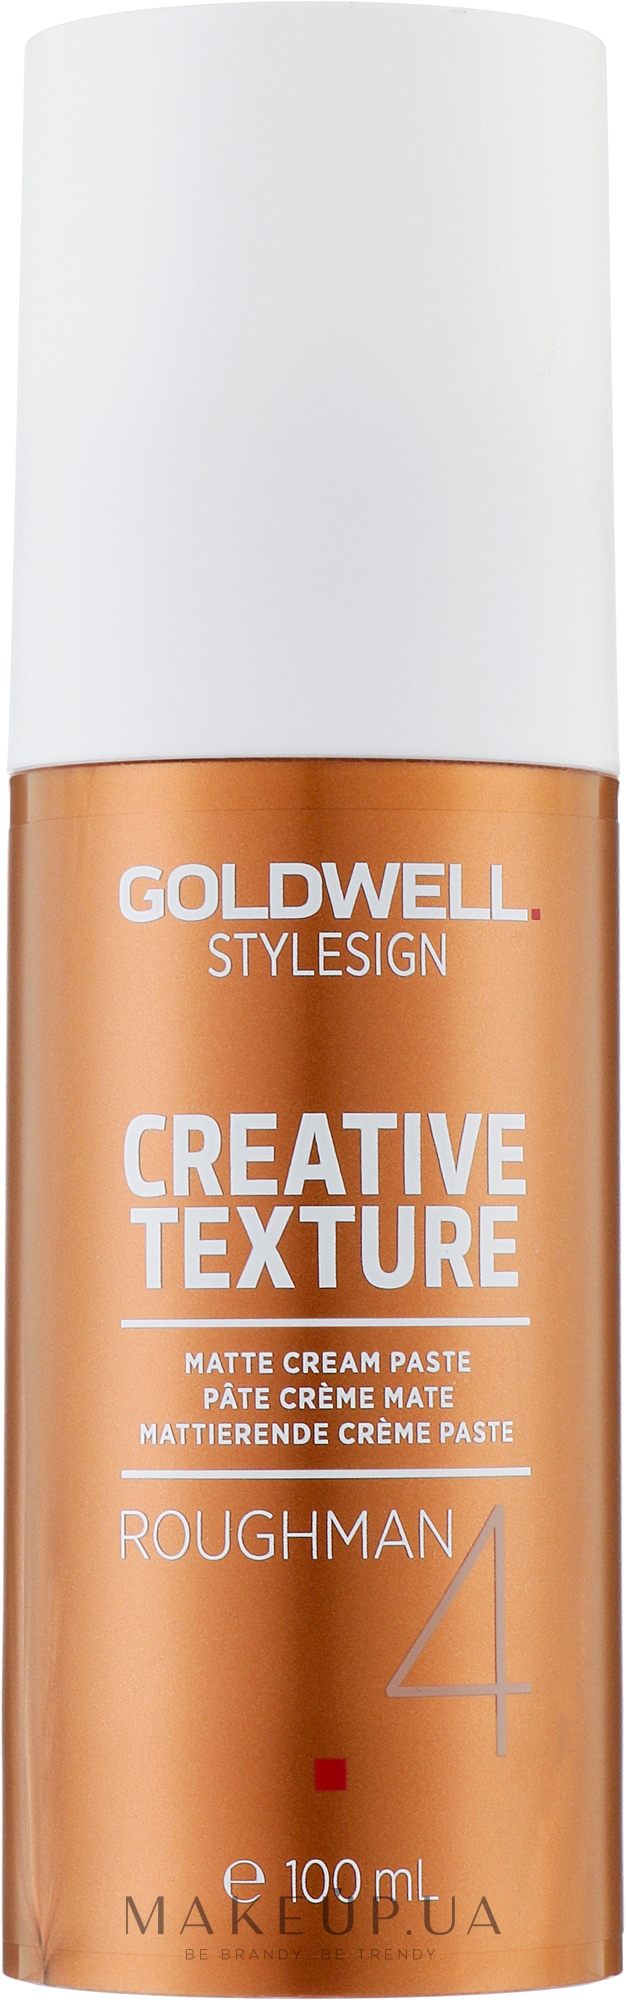 Матовая-кремовая паста для волос - Goldwell Style Sign Creative Texture Roughman — фото 100ml